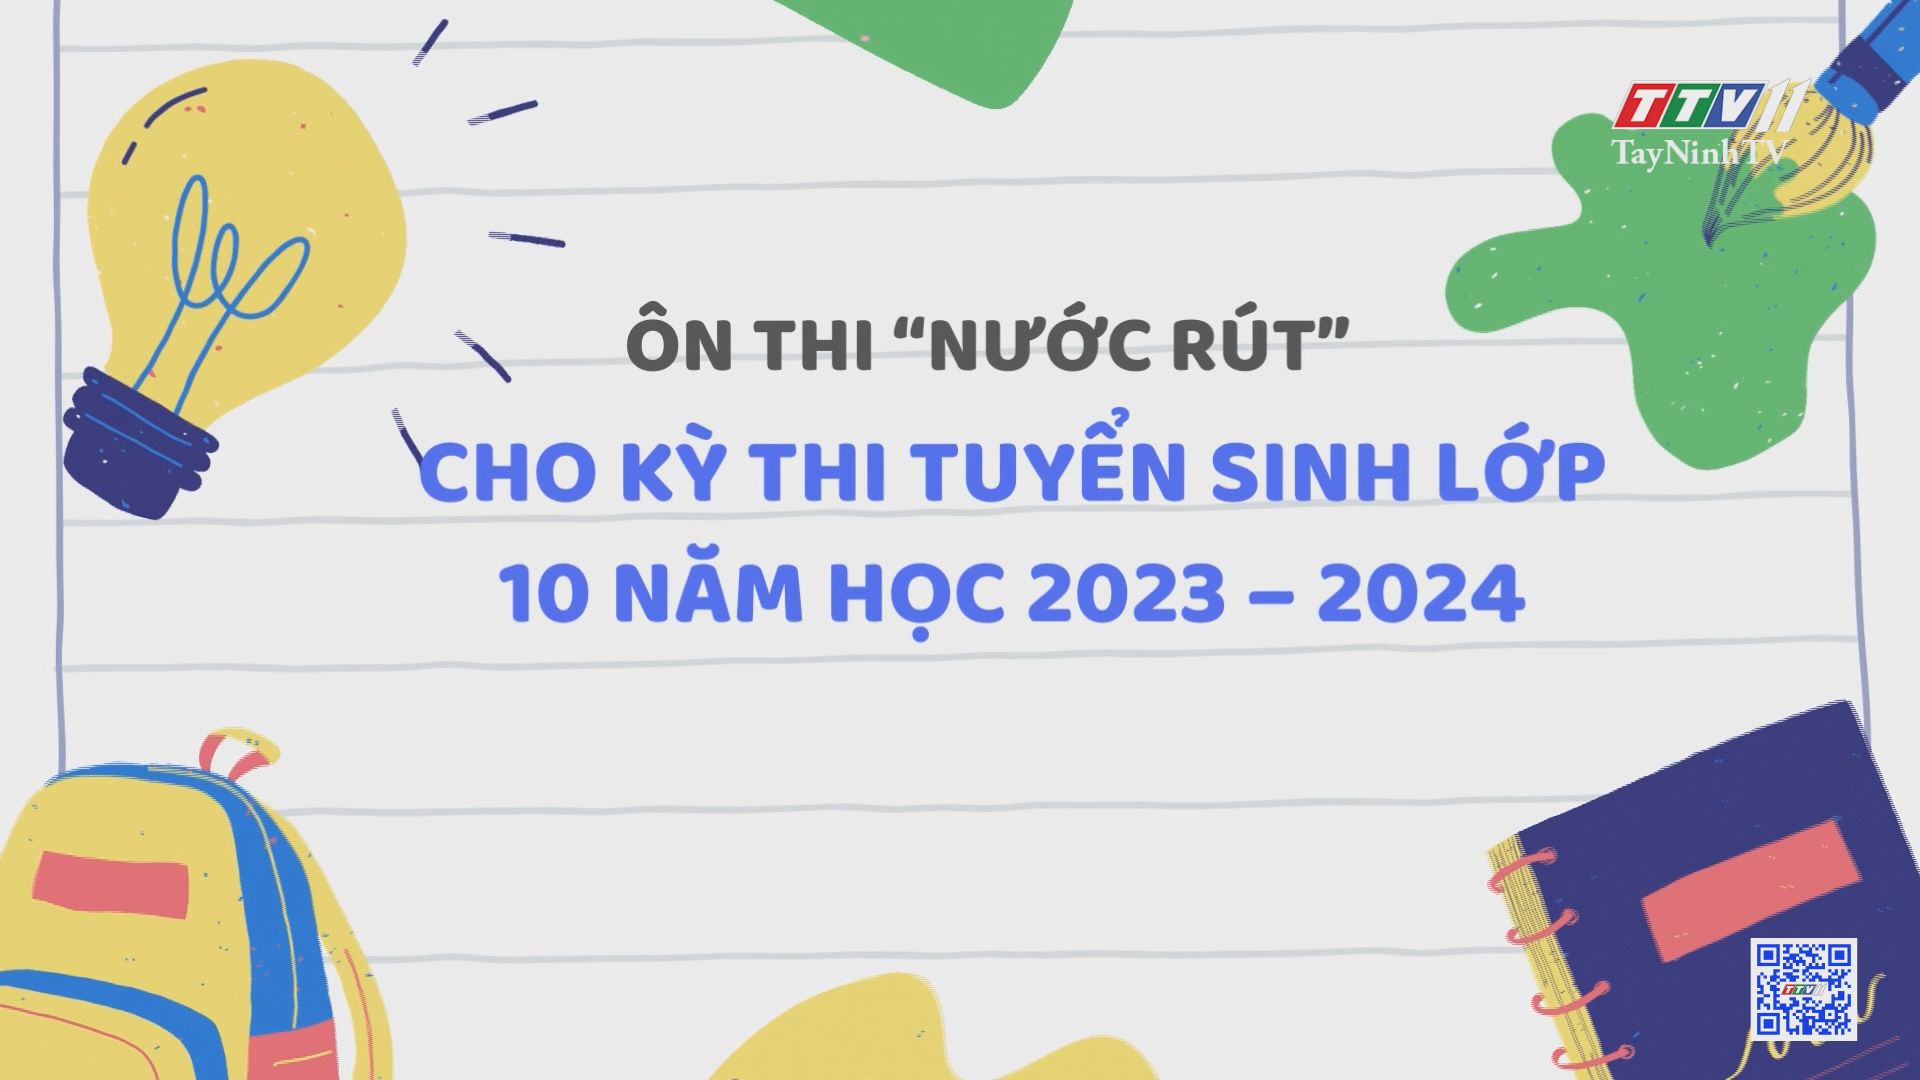 Ôn thi “nước rút” cho kỳ thi tuyển sinh lớp 10 năm học 2023 – 2024 | Giáo dục và đào tạo | TayNinhTV